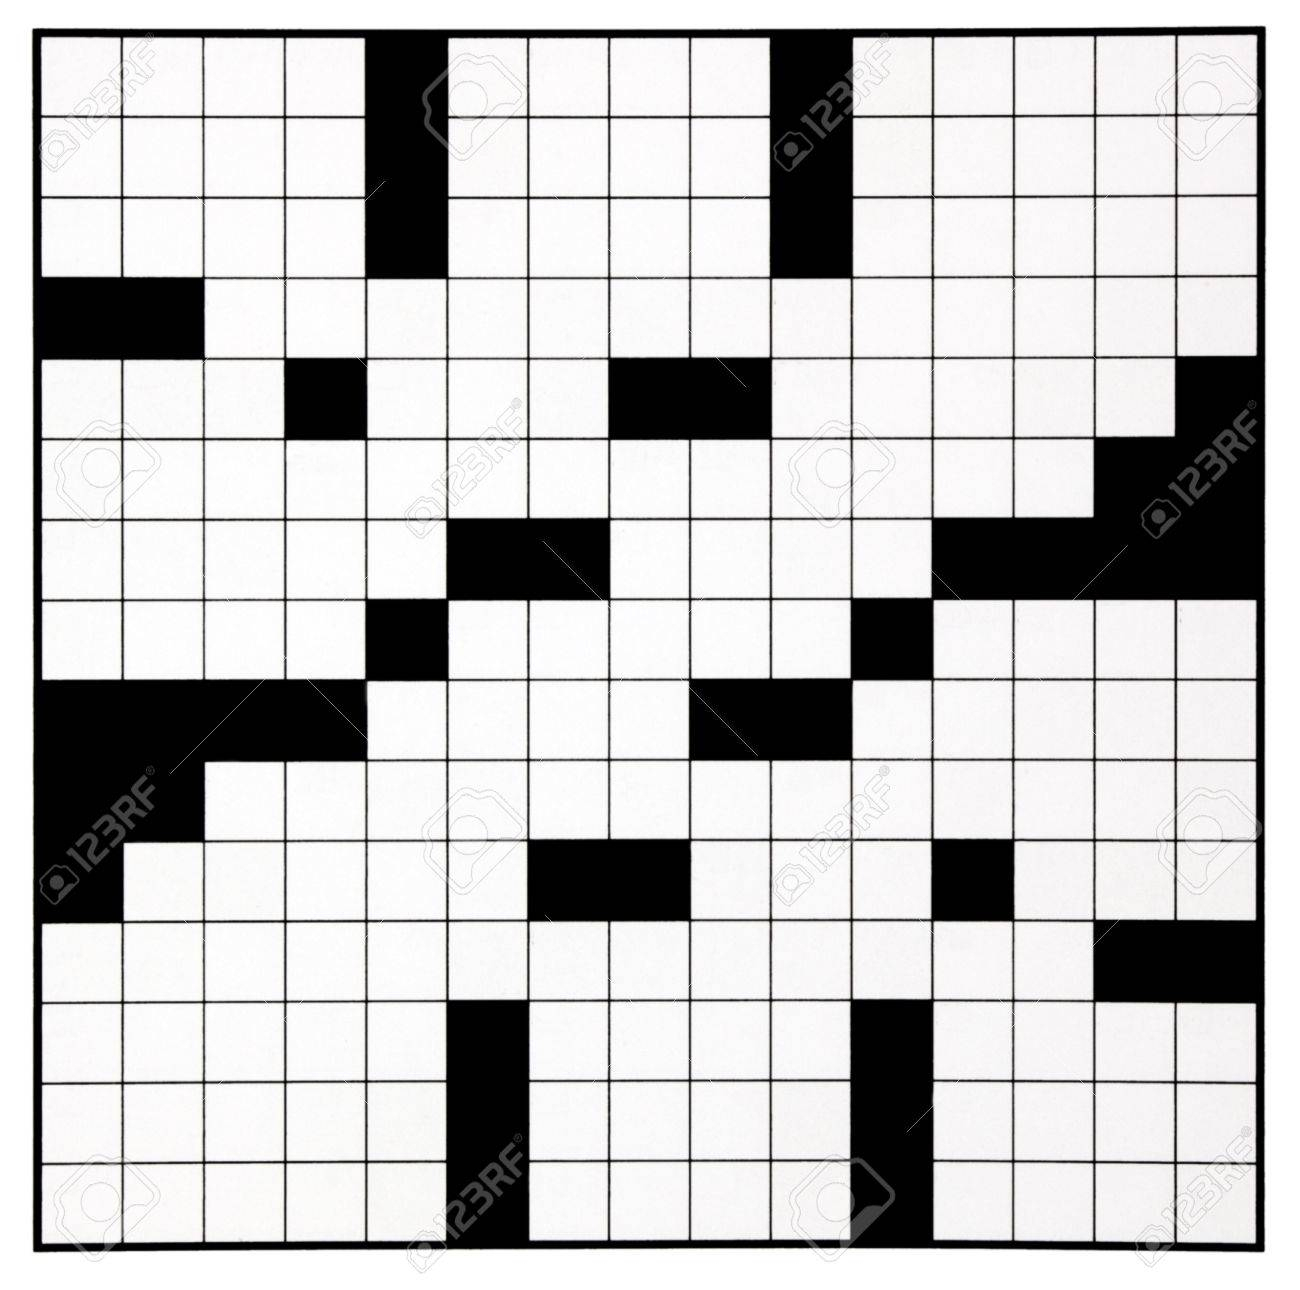 Printable Crossword Grid